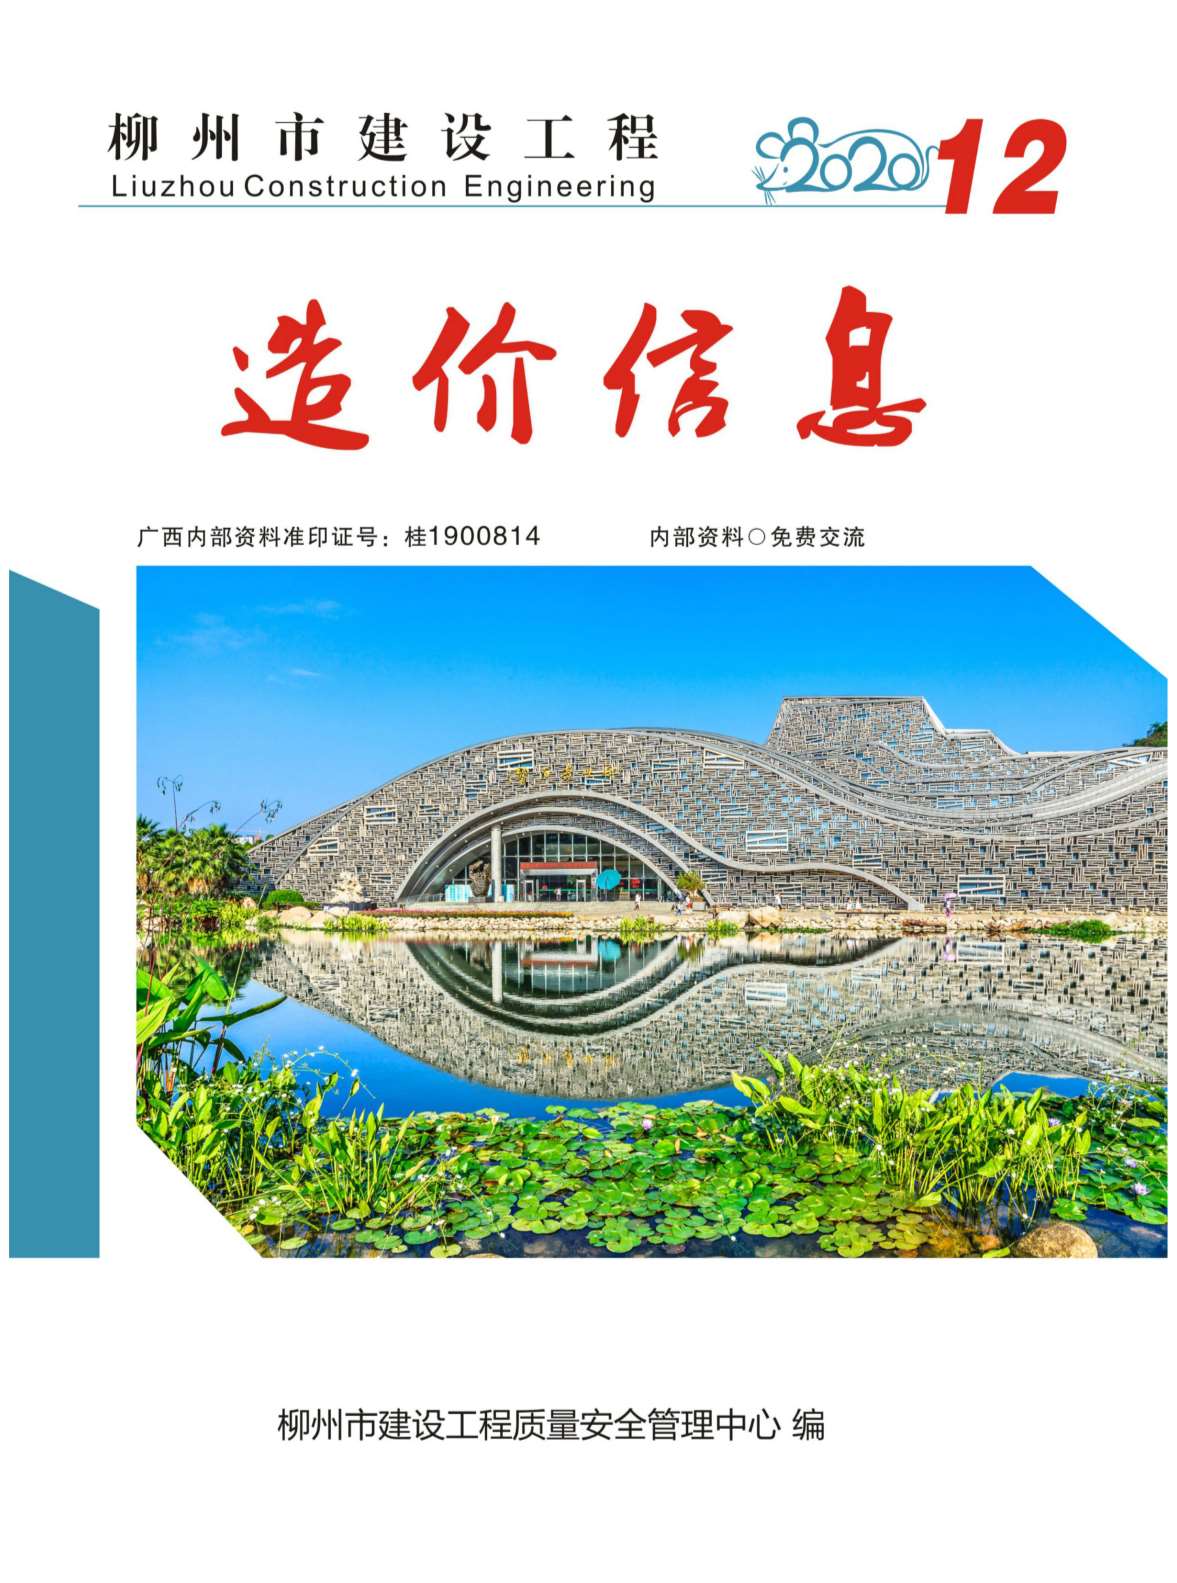 柳州市2020年12月建设工程造价信息